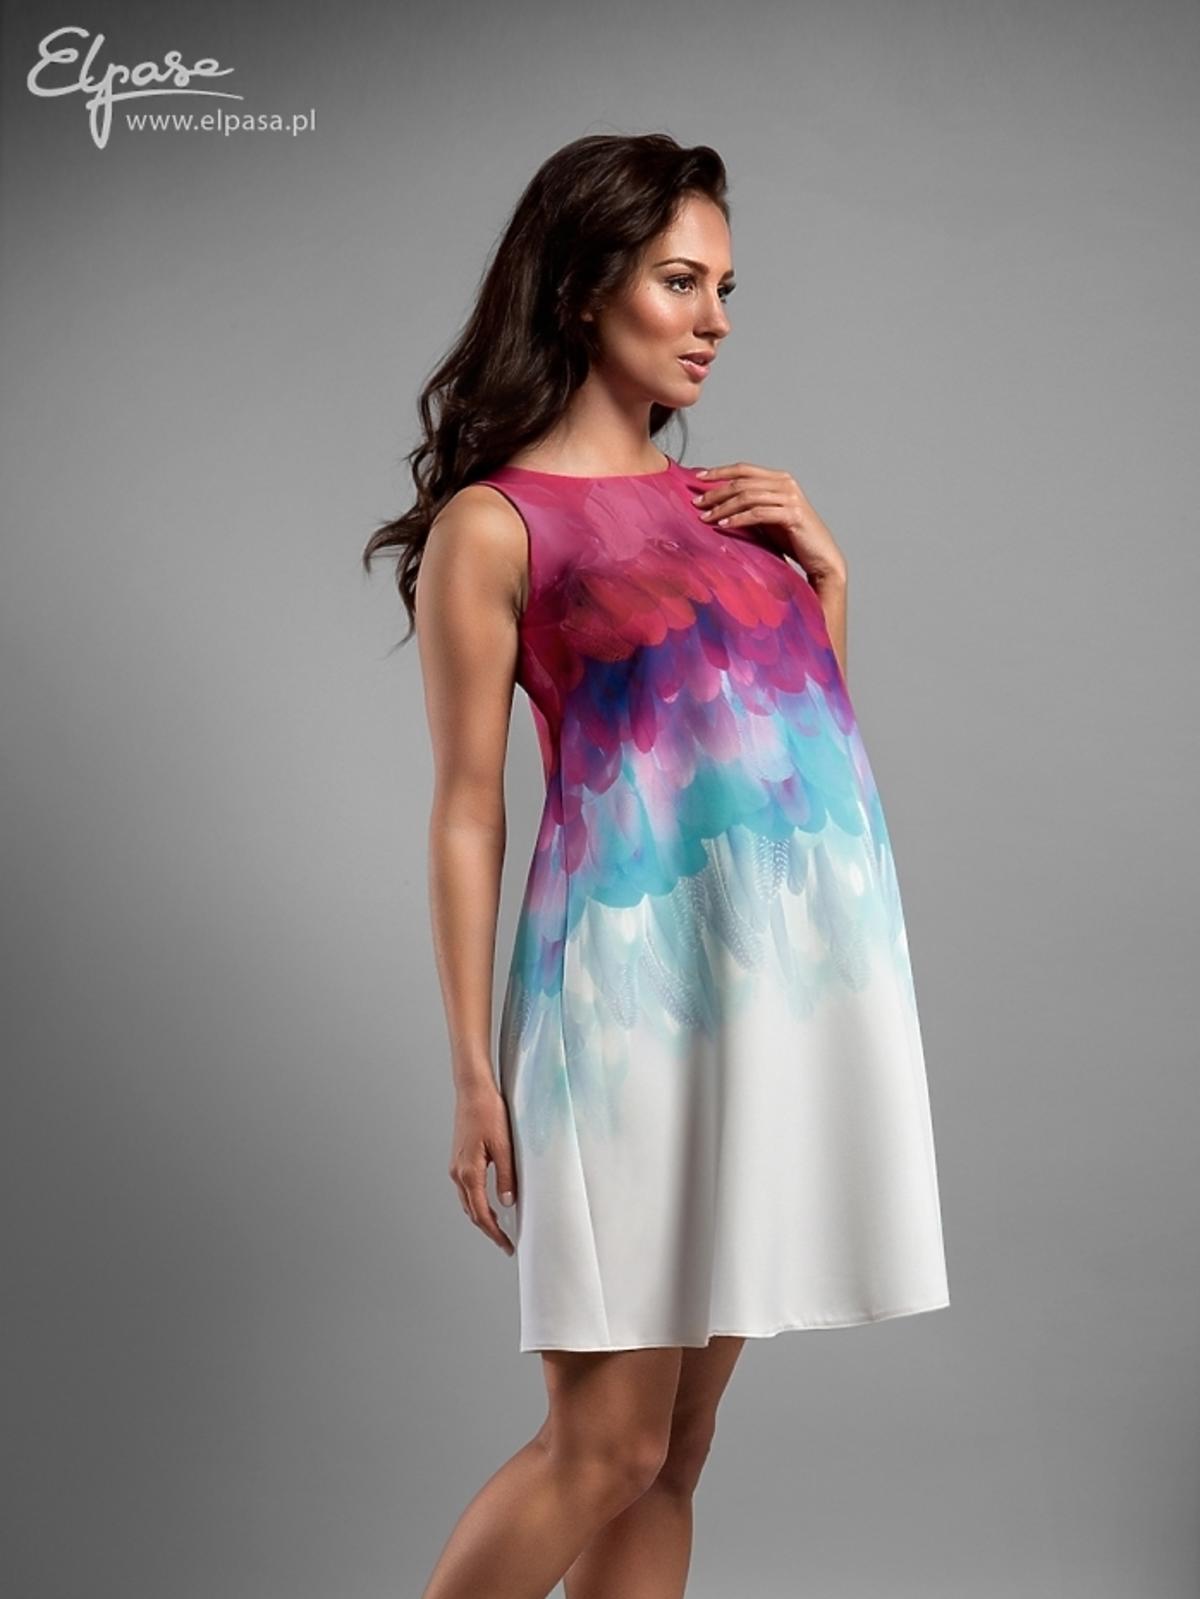 trapezowa sukienka ciążowa z efektownym cieniowanym wzorem u góry